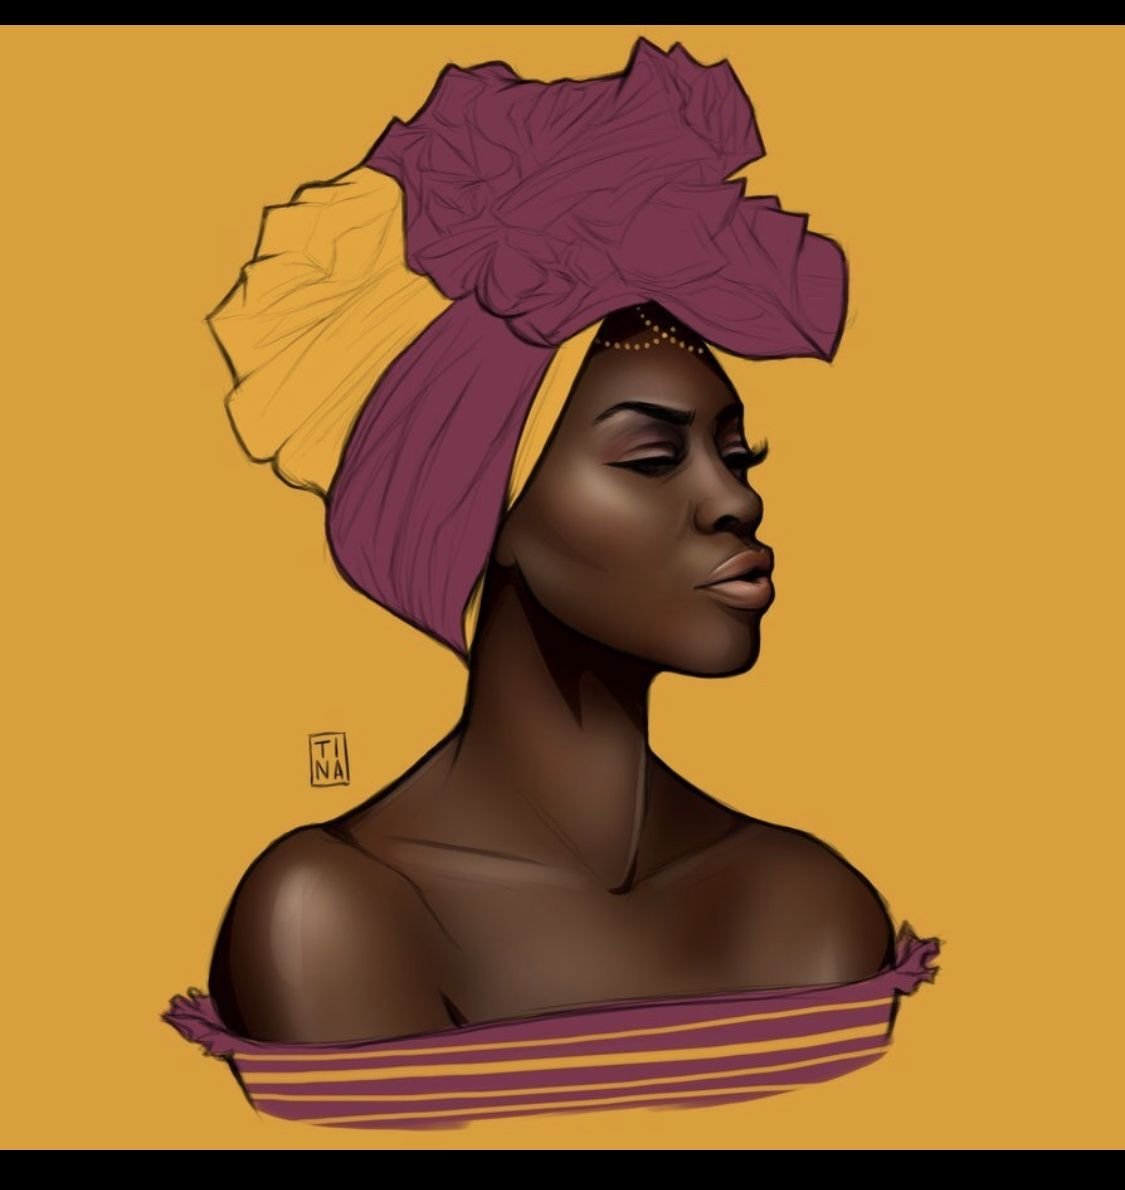 Деревни негритянка. Портрет негритянки. Темнокожая женщина арт. Афроамериканки арт. Портрет афроамериканки.